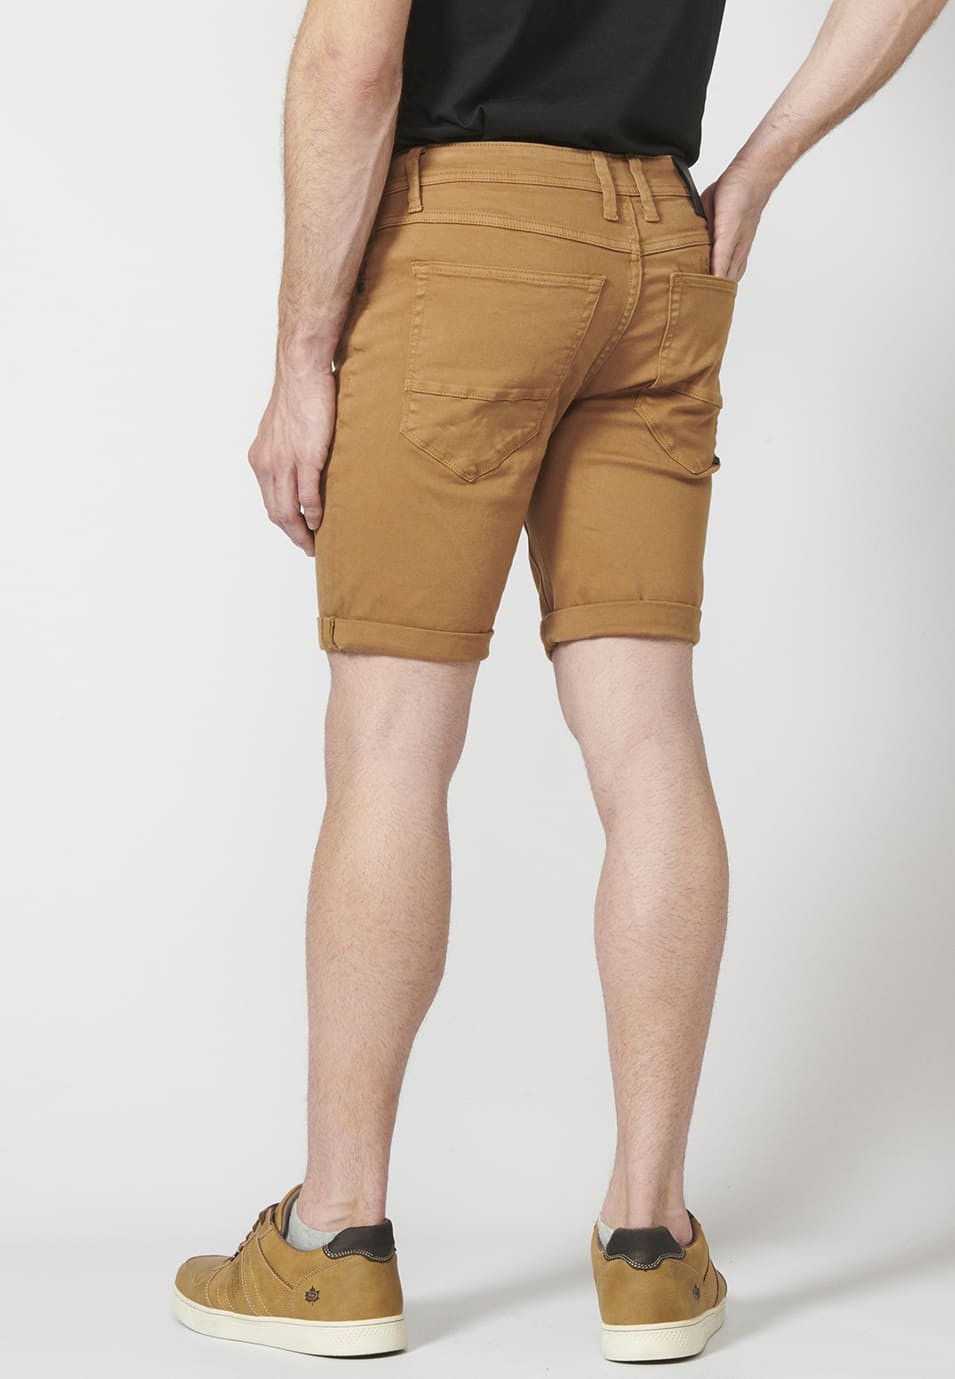 Pantalon corto color tapered fit con detalle de cadena extraíble para Hombre 2